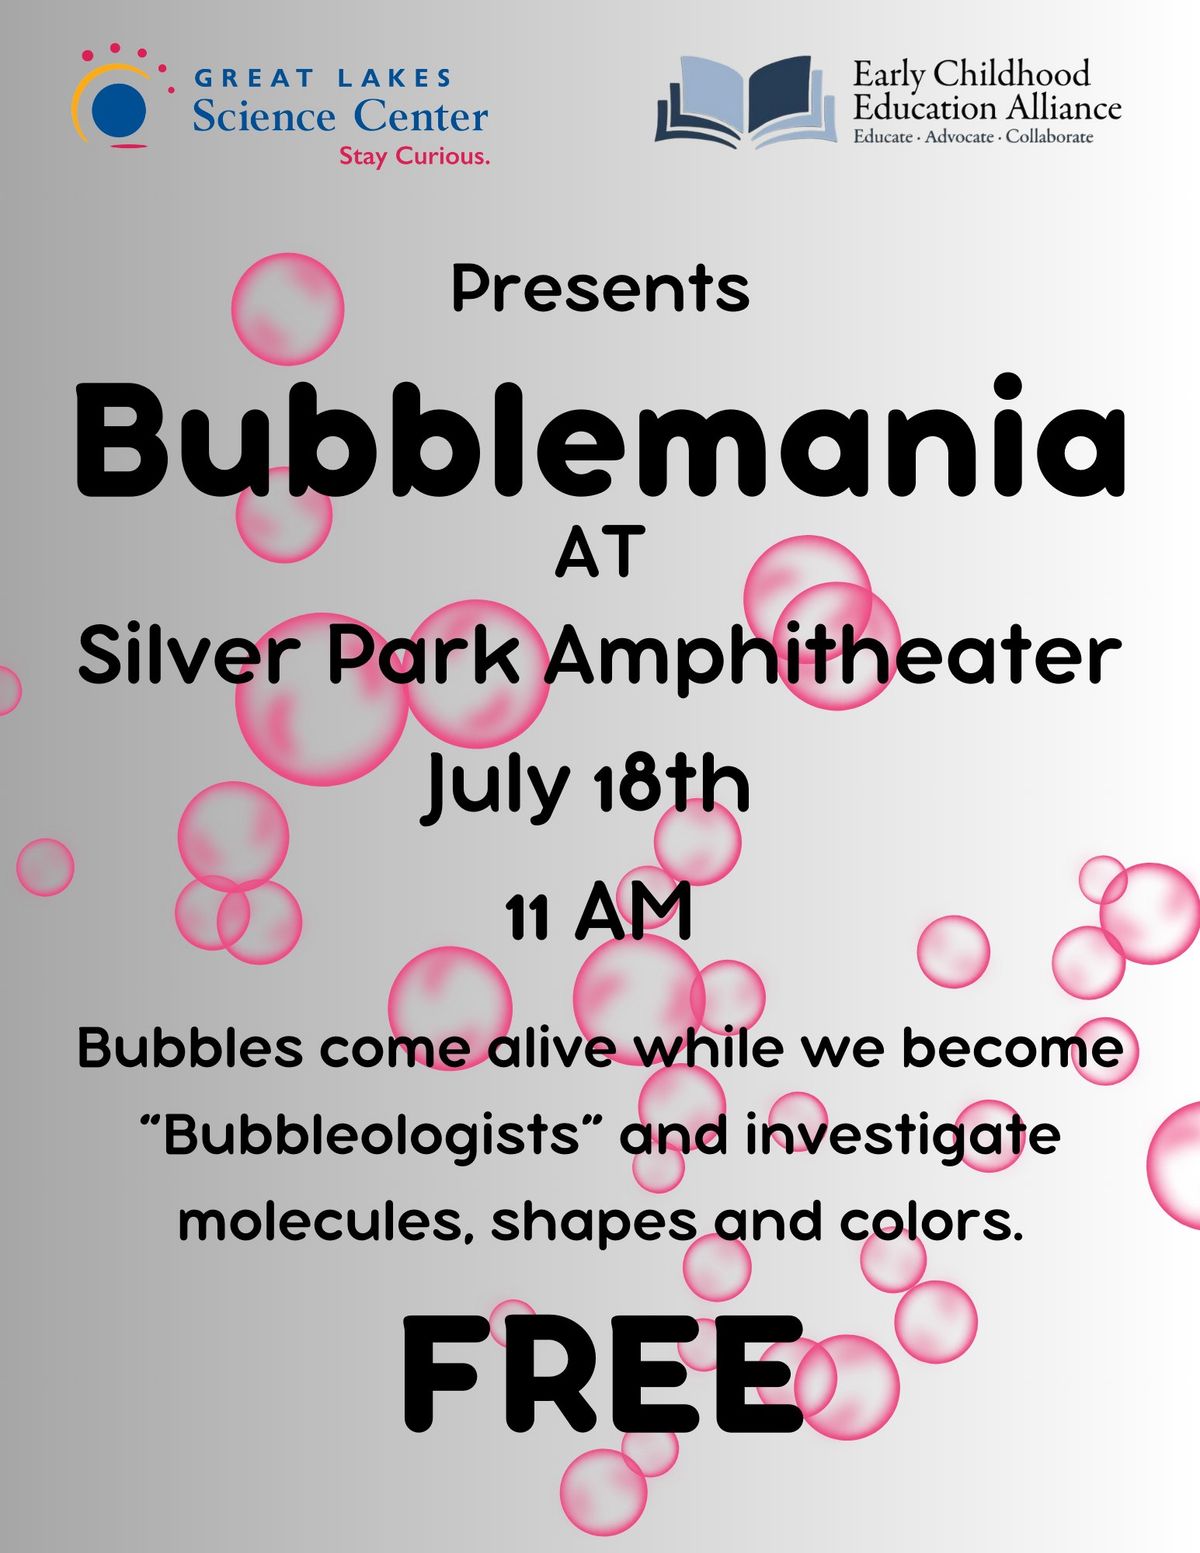 Bubblemania